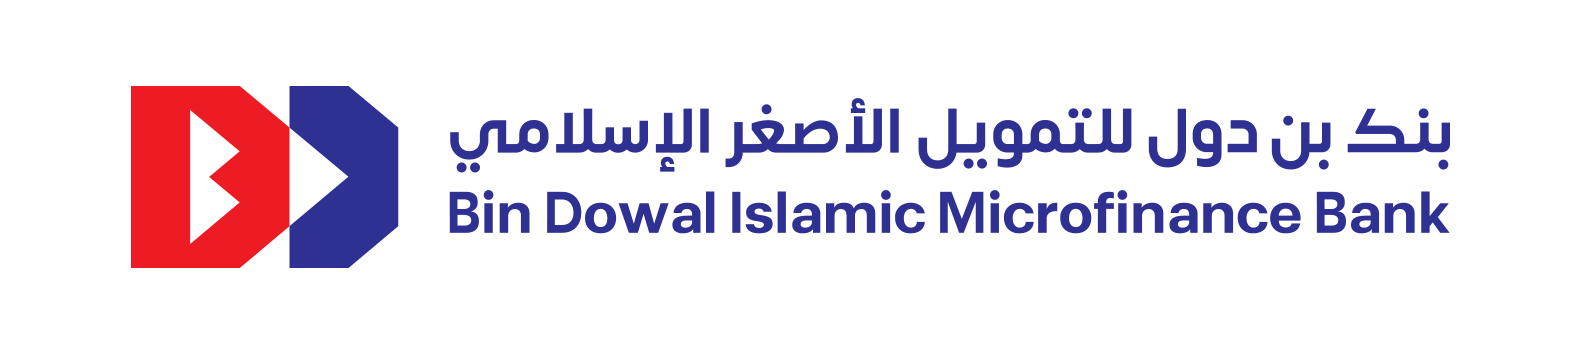 bin dowal logo